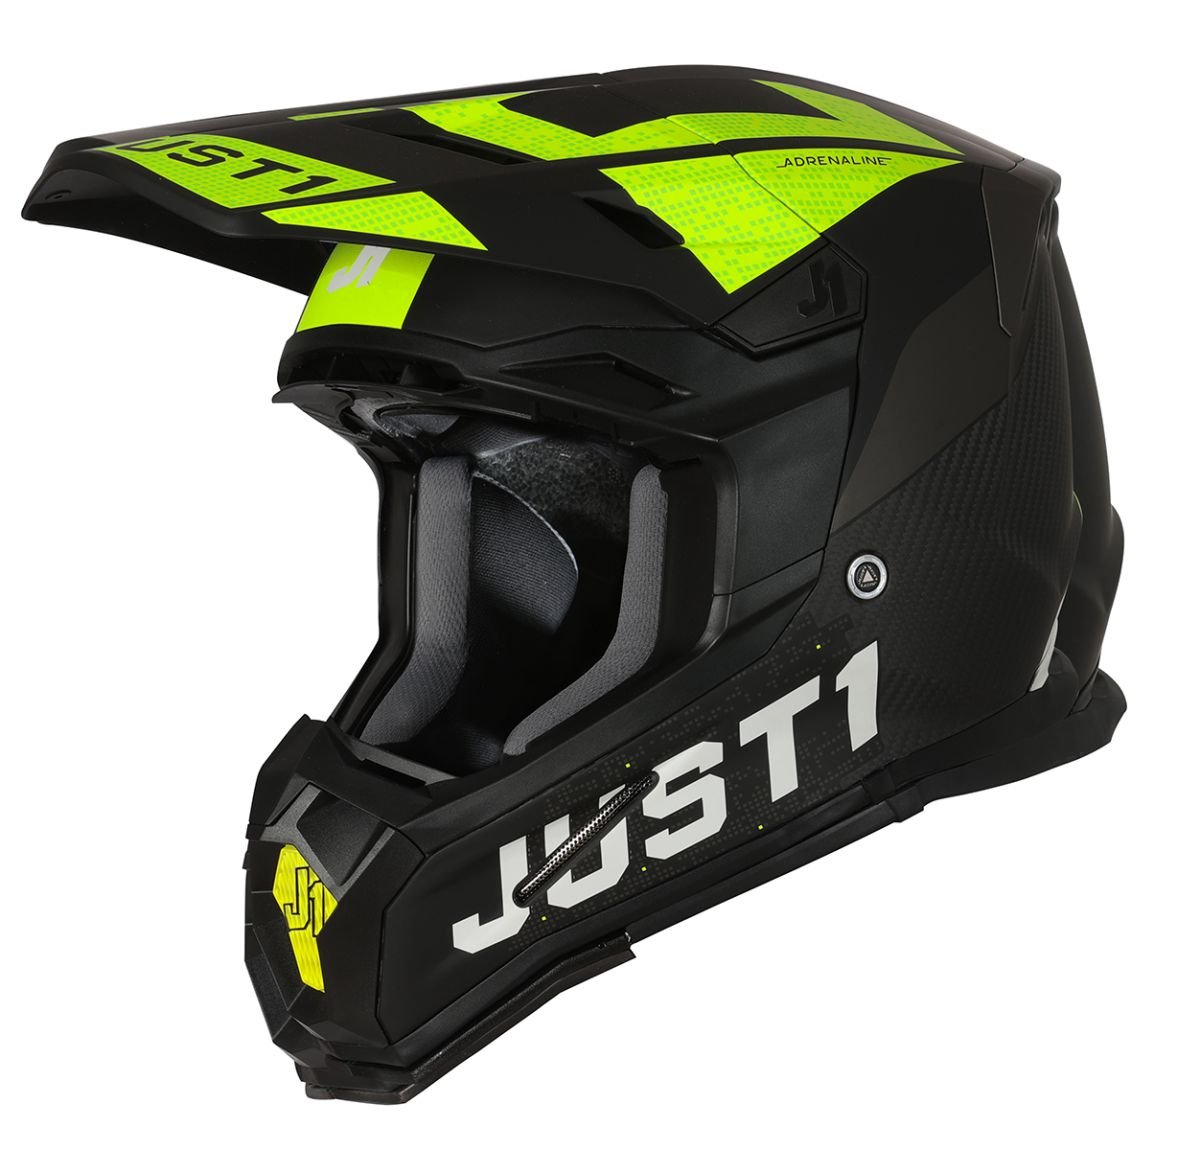 Image of Just1 Helmet J-22 Adrenaline Black Yellow Fluo Carbon Matt Offroad Helmet Size XS EN